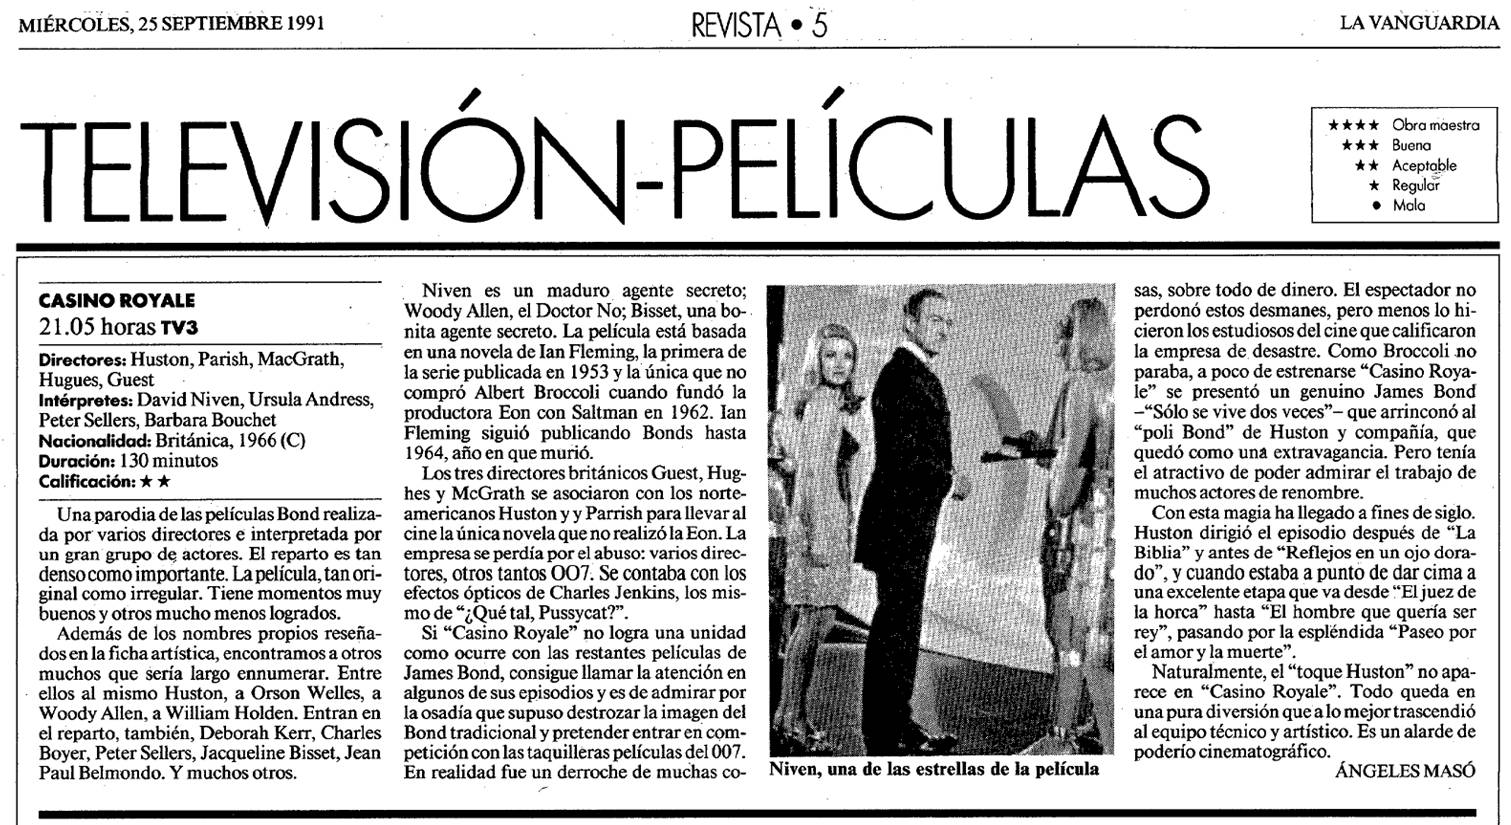 67 CR 1991 09 25 La Vanguardia Revista 005 TV3